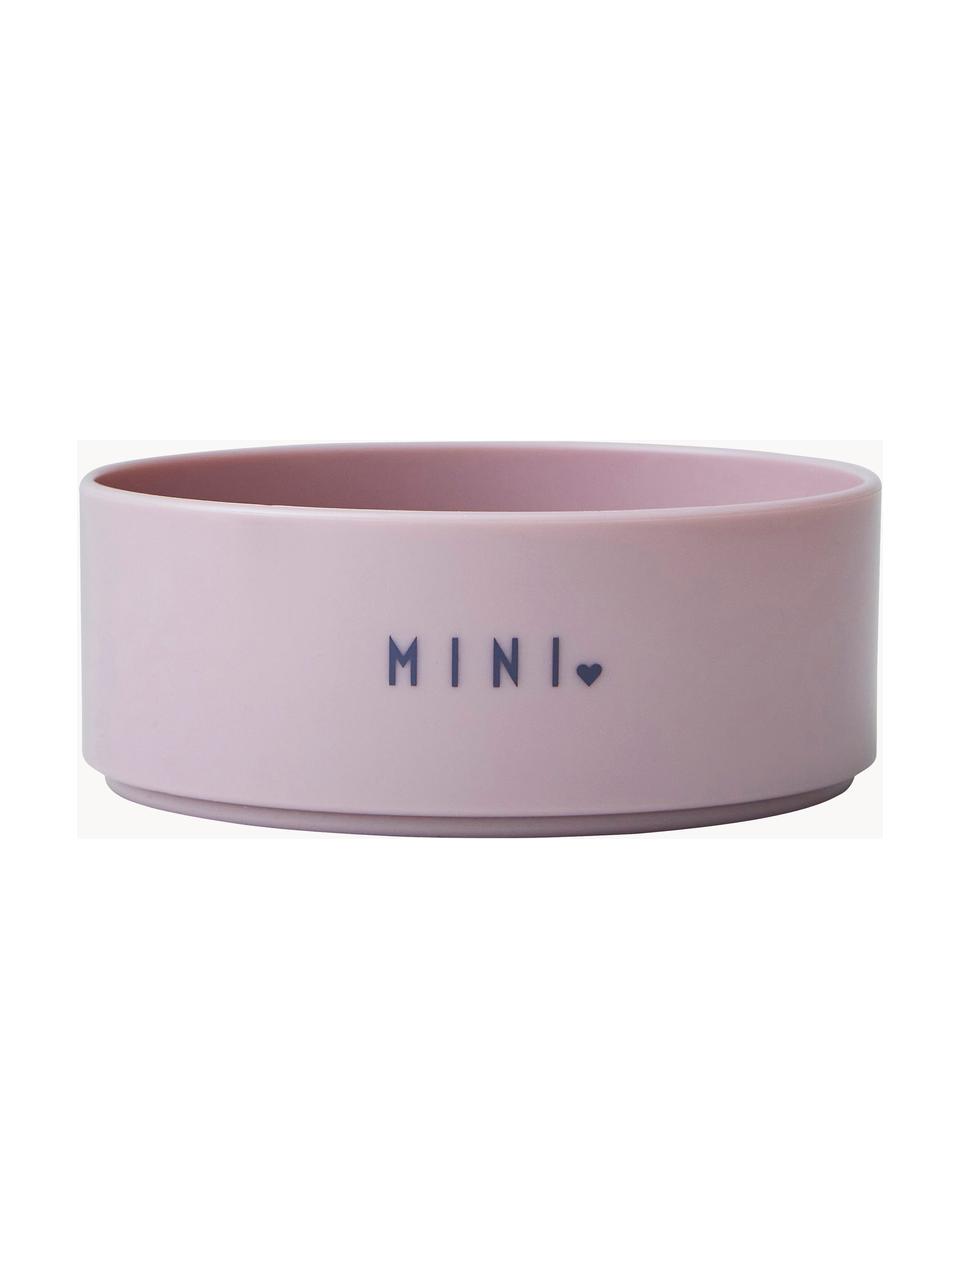 Dětská miska Mini Favourite, Tritan, neobsahuje BPA, BPS a EA, Světle růžová (Sweetheart), Ø 11 cm, V 5 cm